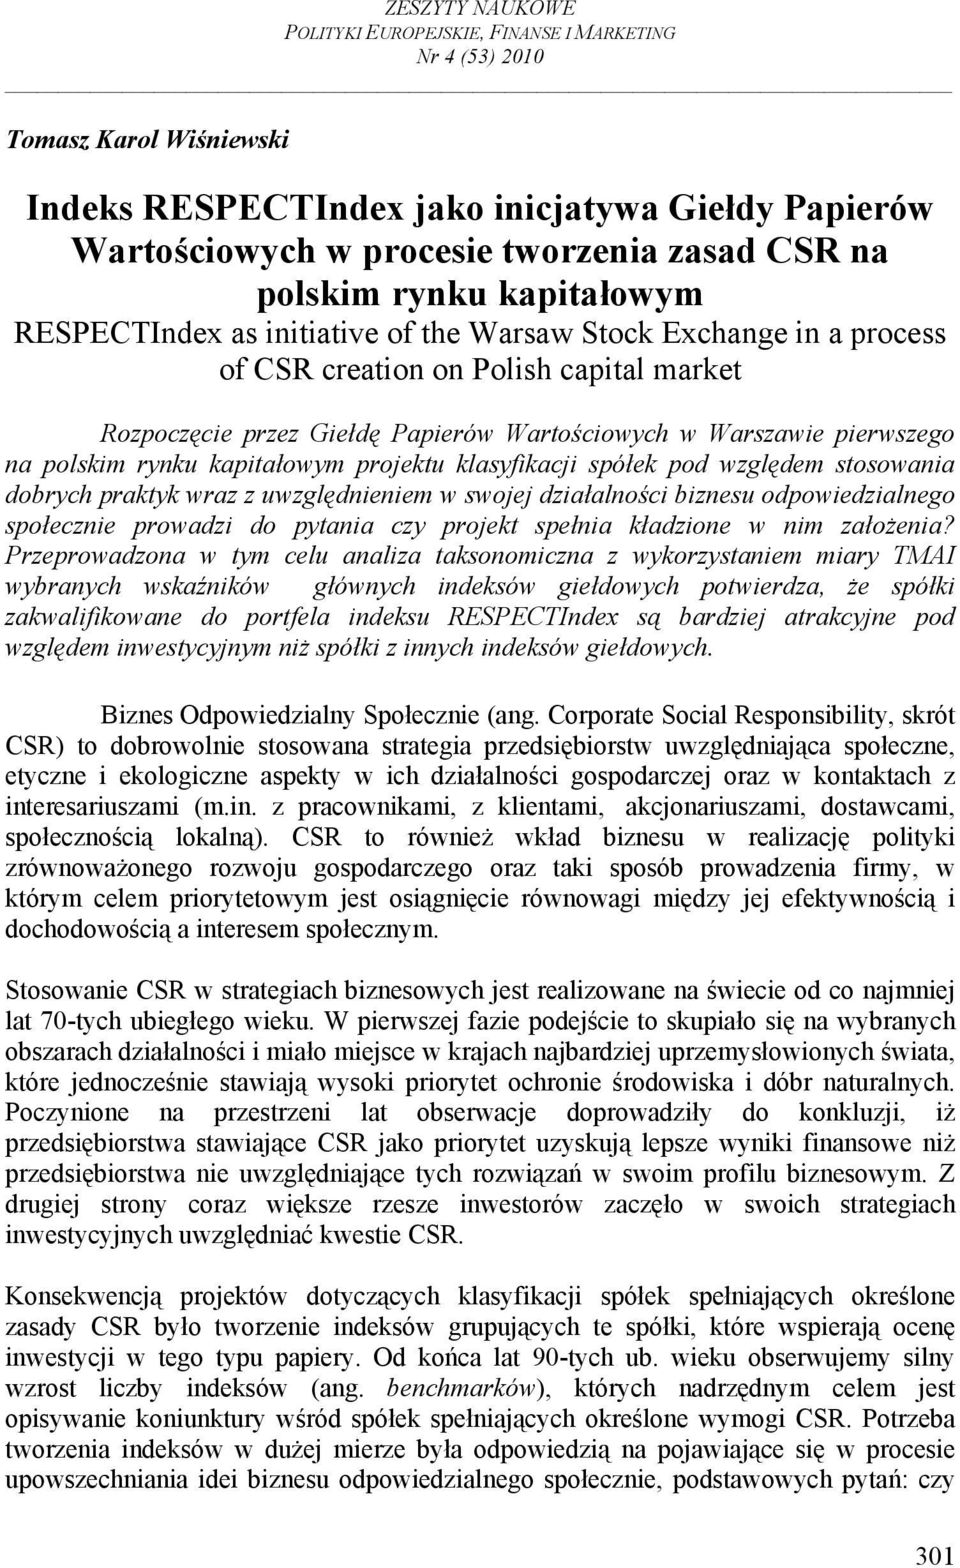 pierwszego na polskim rynku kapitałowym projektu klasyfikacji spółek pod względem stosowania dobrych praktyk wraz z uwzględnieniem w swojej działalności biznesu odpowiedzialnego społecznie prowadzi